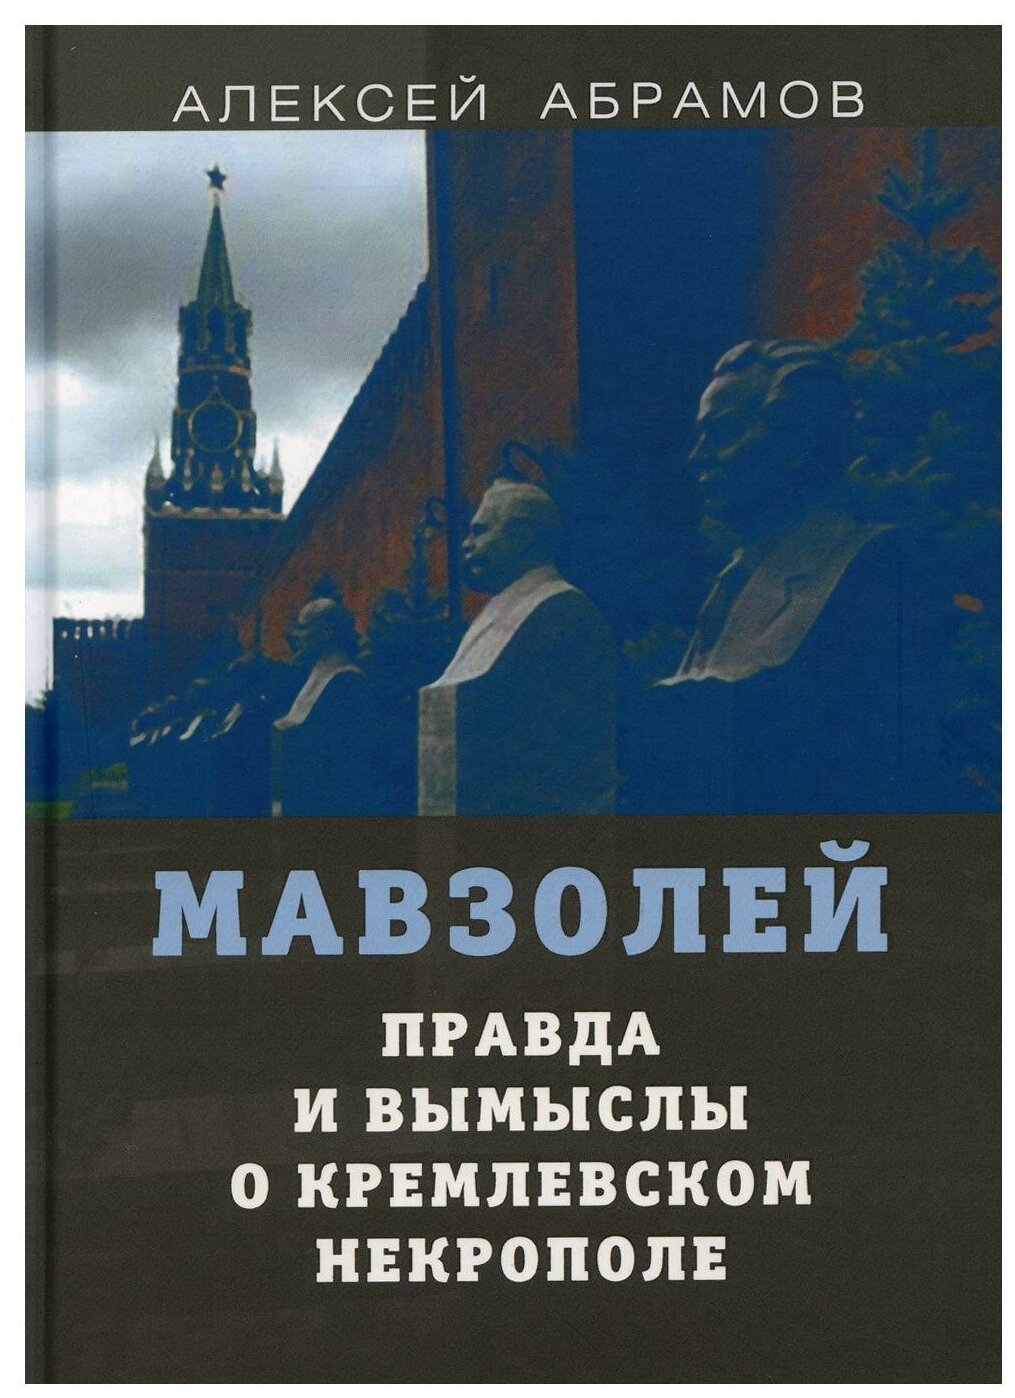 Правда и вымыслы о кремлевском некрополе и мавзолее - фото №1